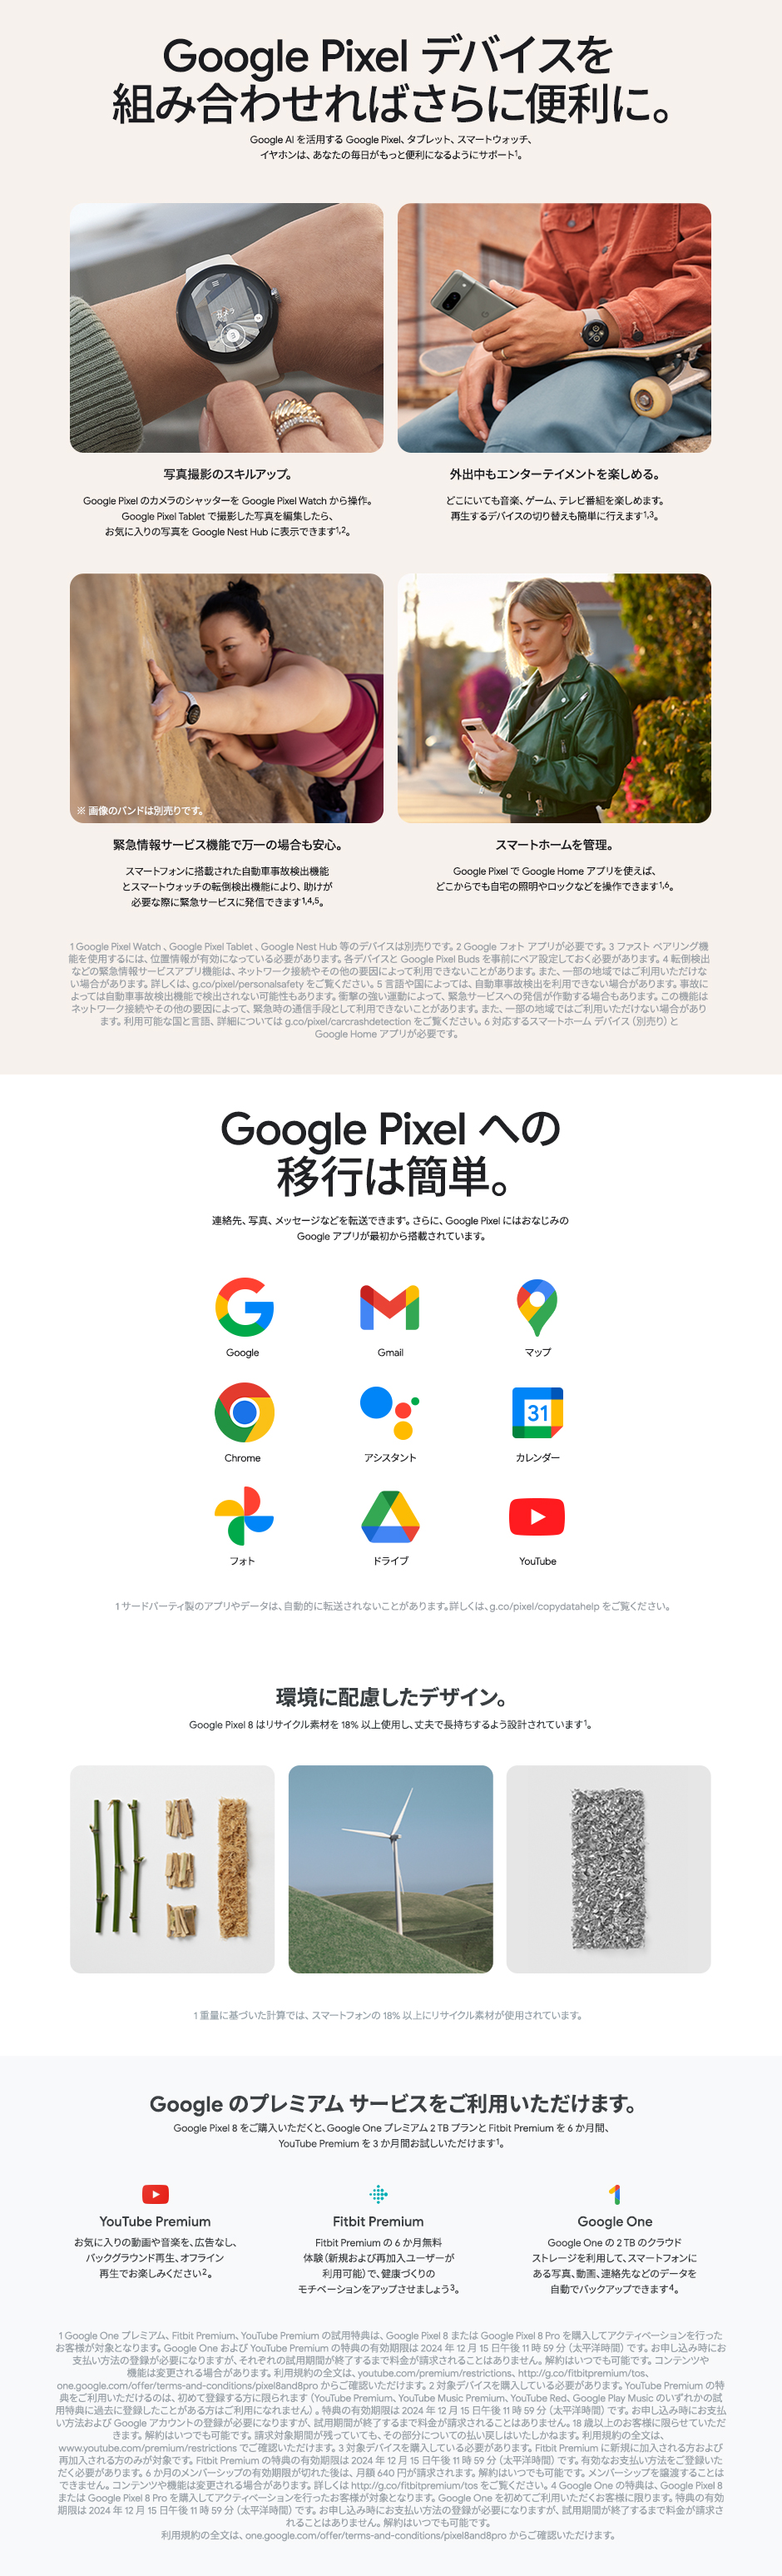 製品情報 Google Pixel デバイスを組み合わせればさらに便利に。